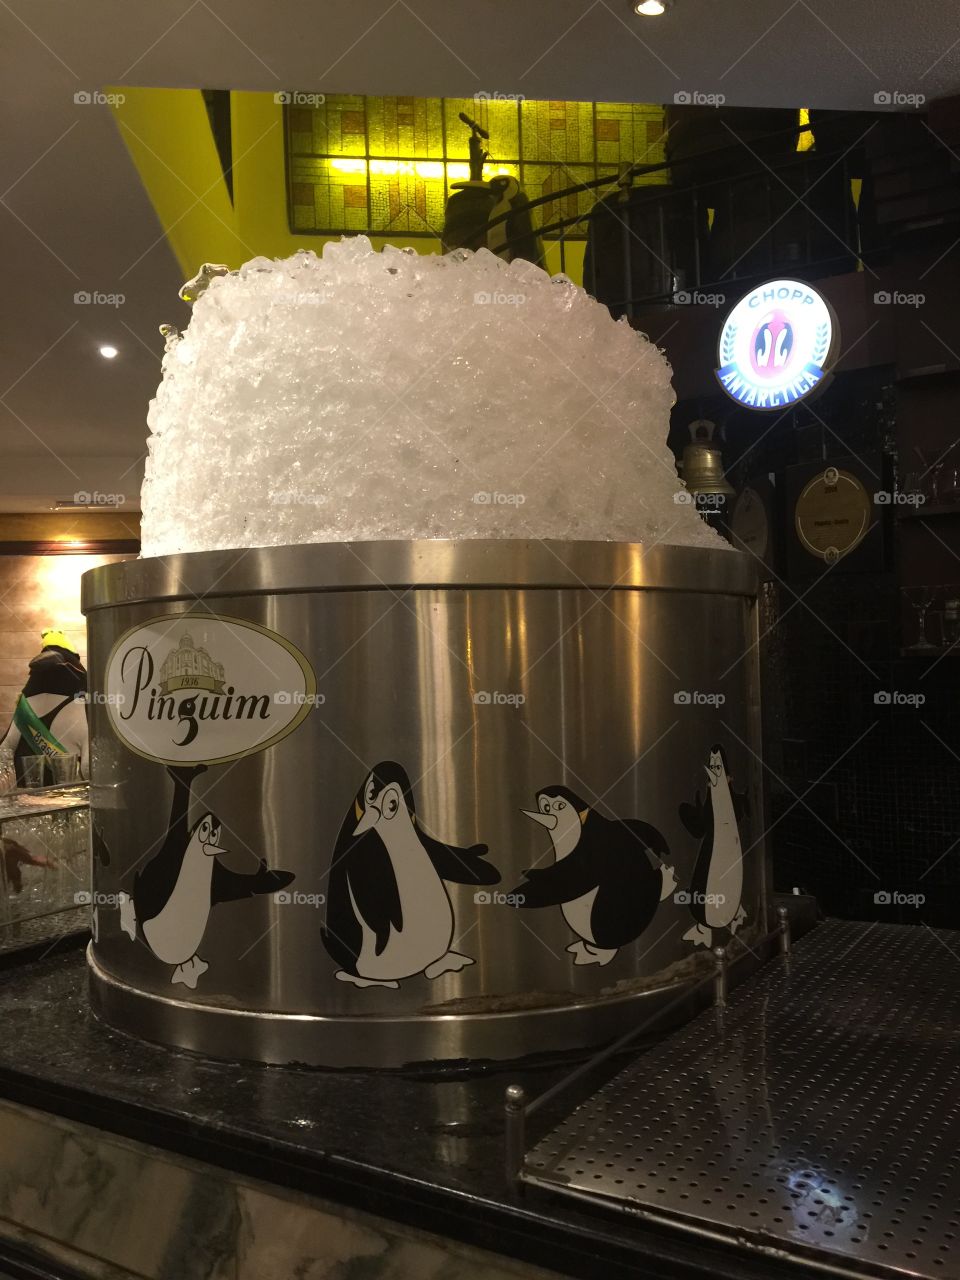 Chopp no Pinguim.... gelo pra aquecer o happy!!! Ribeirão Preto terra do chopp.iceberg 